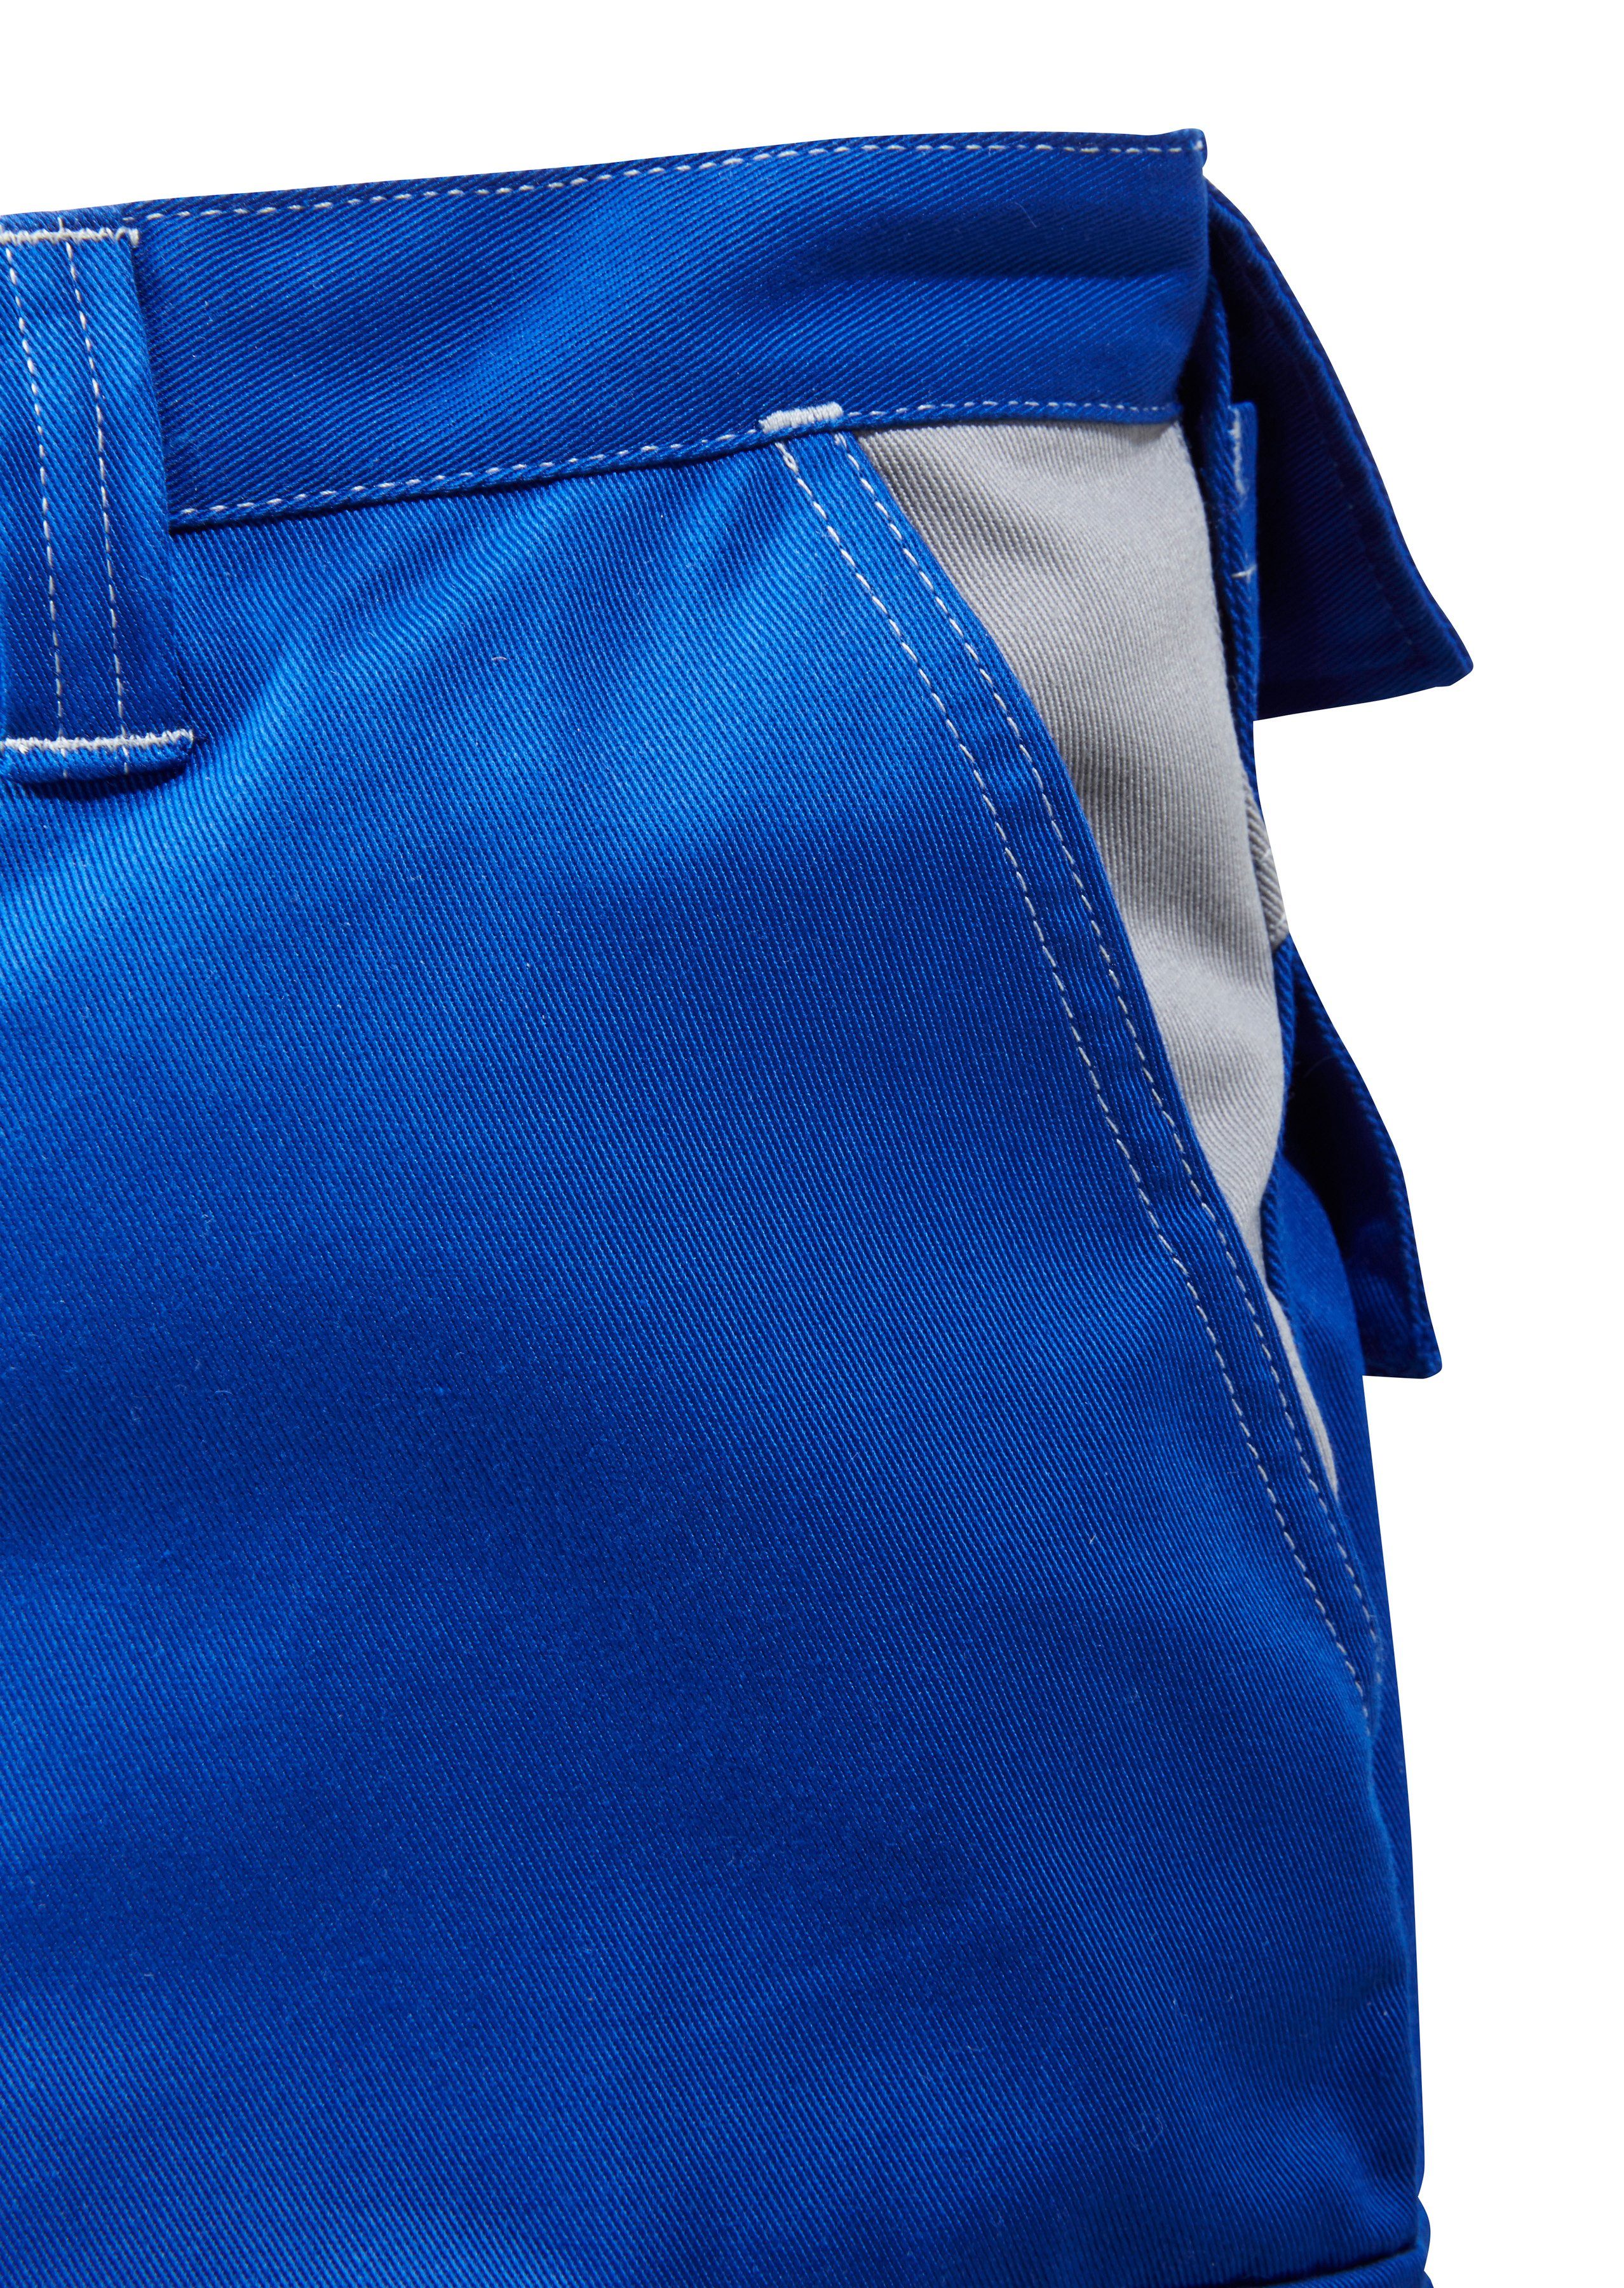 Kübler Arbeitshose mit Kniepolstertaschen blau-grau